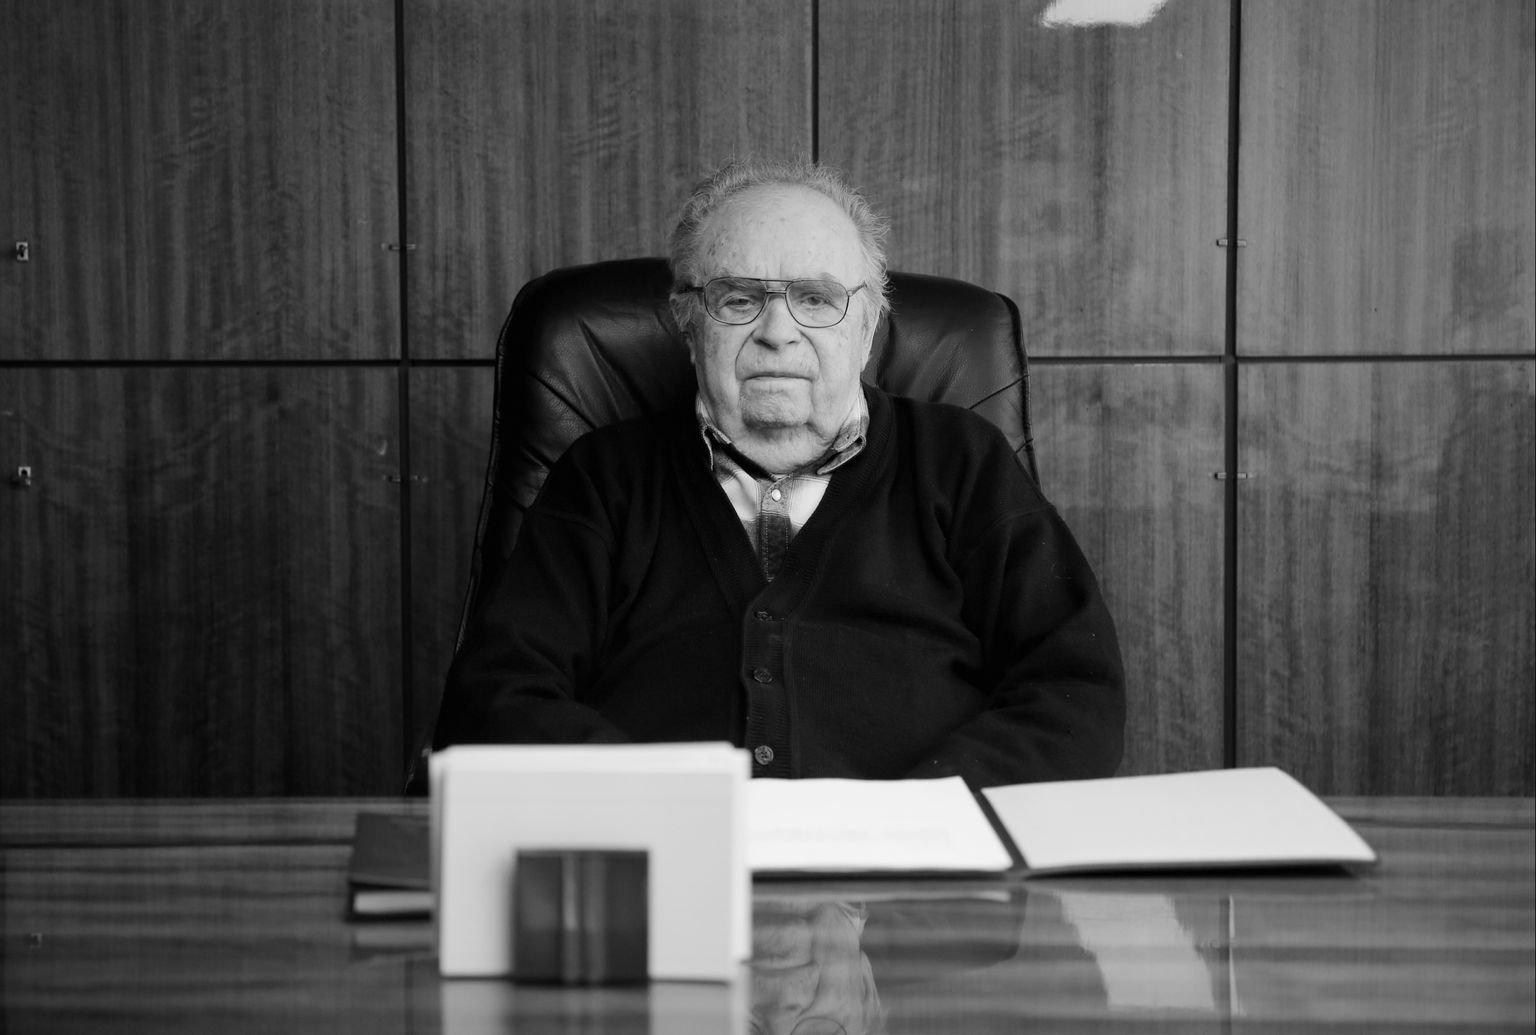 Руководитель Тартуского лесокомбината и Tarmeko Grupp Олев Нигуль в своем кабинете в 2019 году. На тот момент ему было 90 лет, но он продолжал работать.